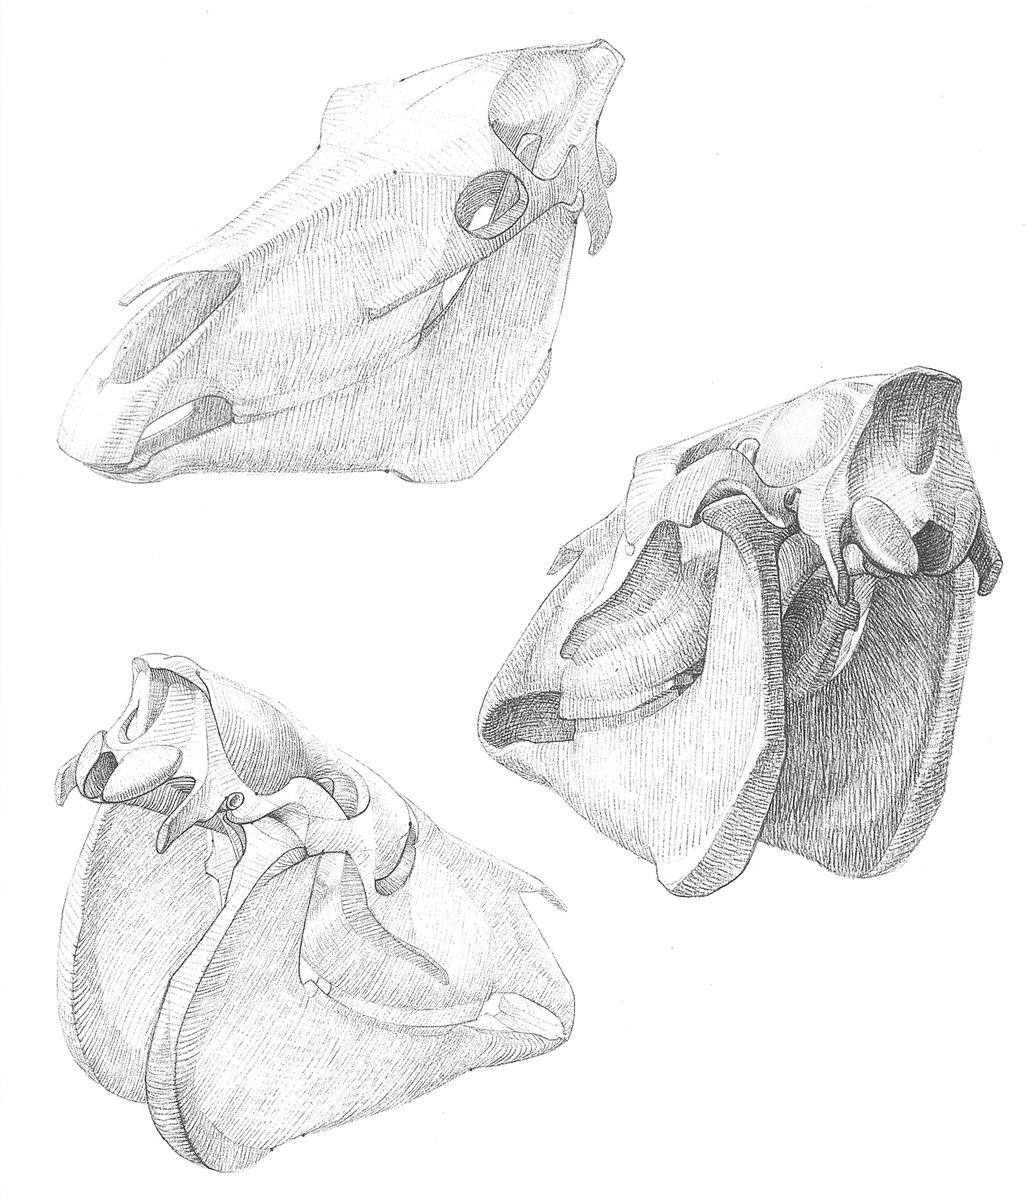 ゴットフリード・バメス『動物解剖学大全(Grosse Tieranatomie)』の図版には、普通の解剖図の他に、面に簡略化した小粋な図が掲載されている。最初はなぜ写実を目指さないか疑問だったが、この方法の良さがじわじわと染み込むように理解できるようになった。 